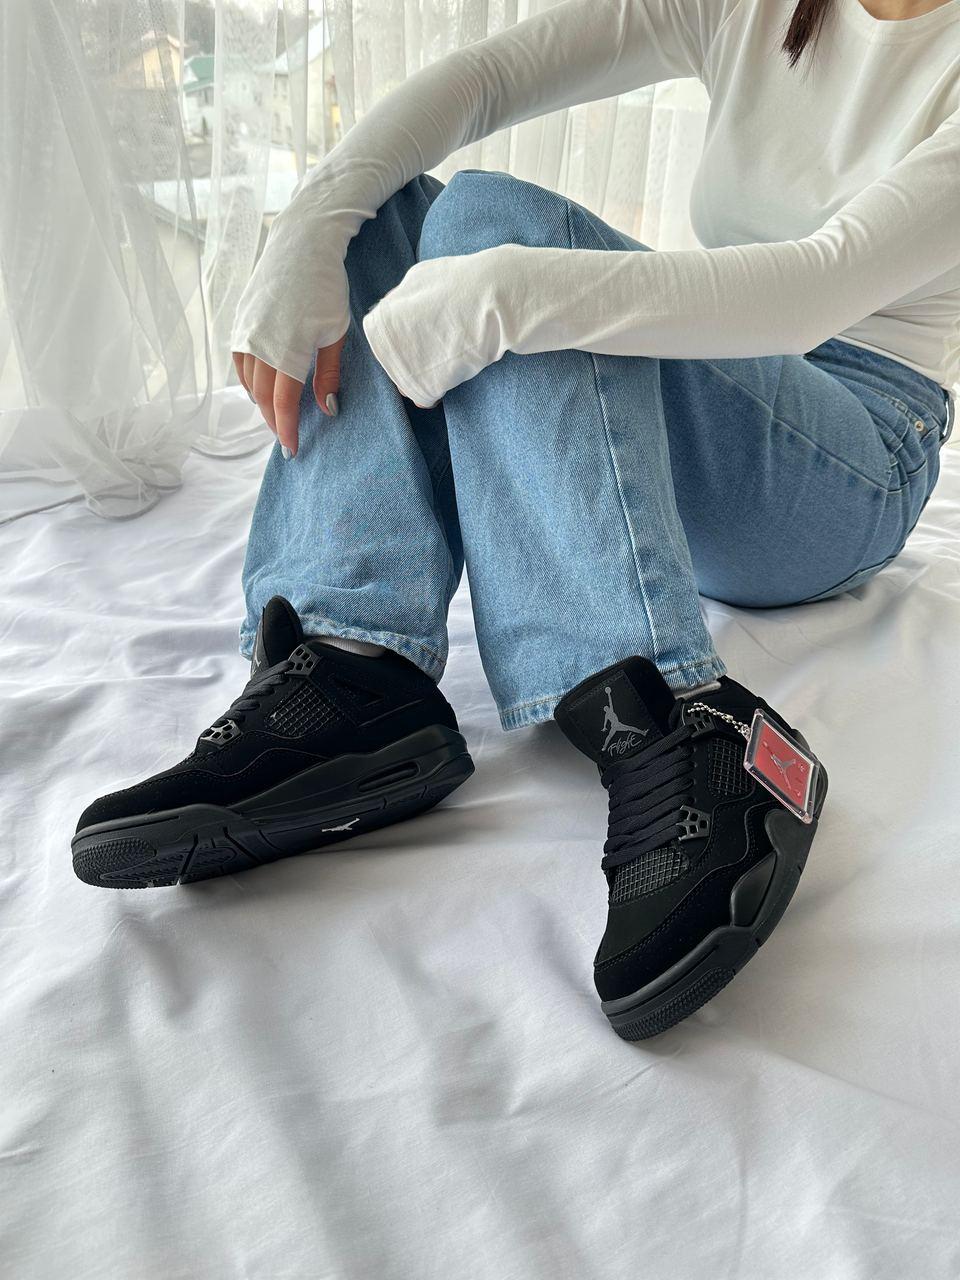 Кросівки Nike Air Jordan 4 Retro чоловічі, кросівки найк аір джордан ретро чорні, еір джордан, найки джордани